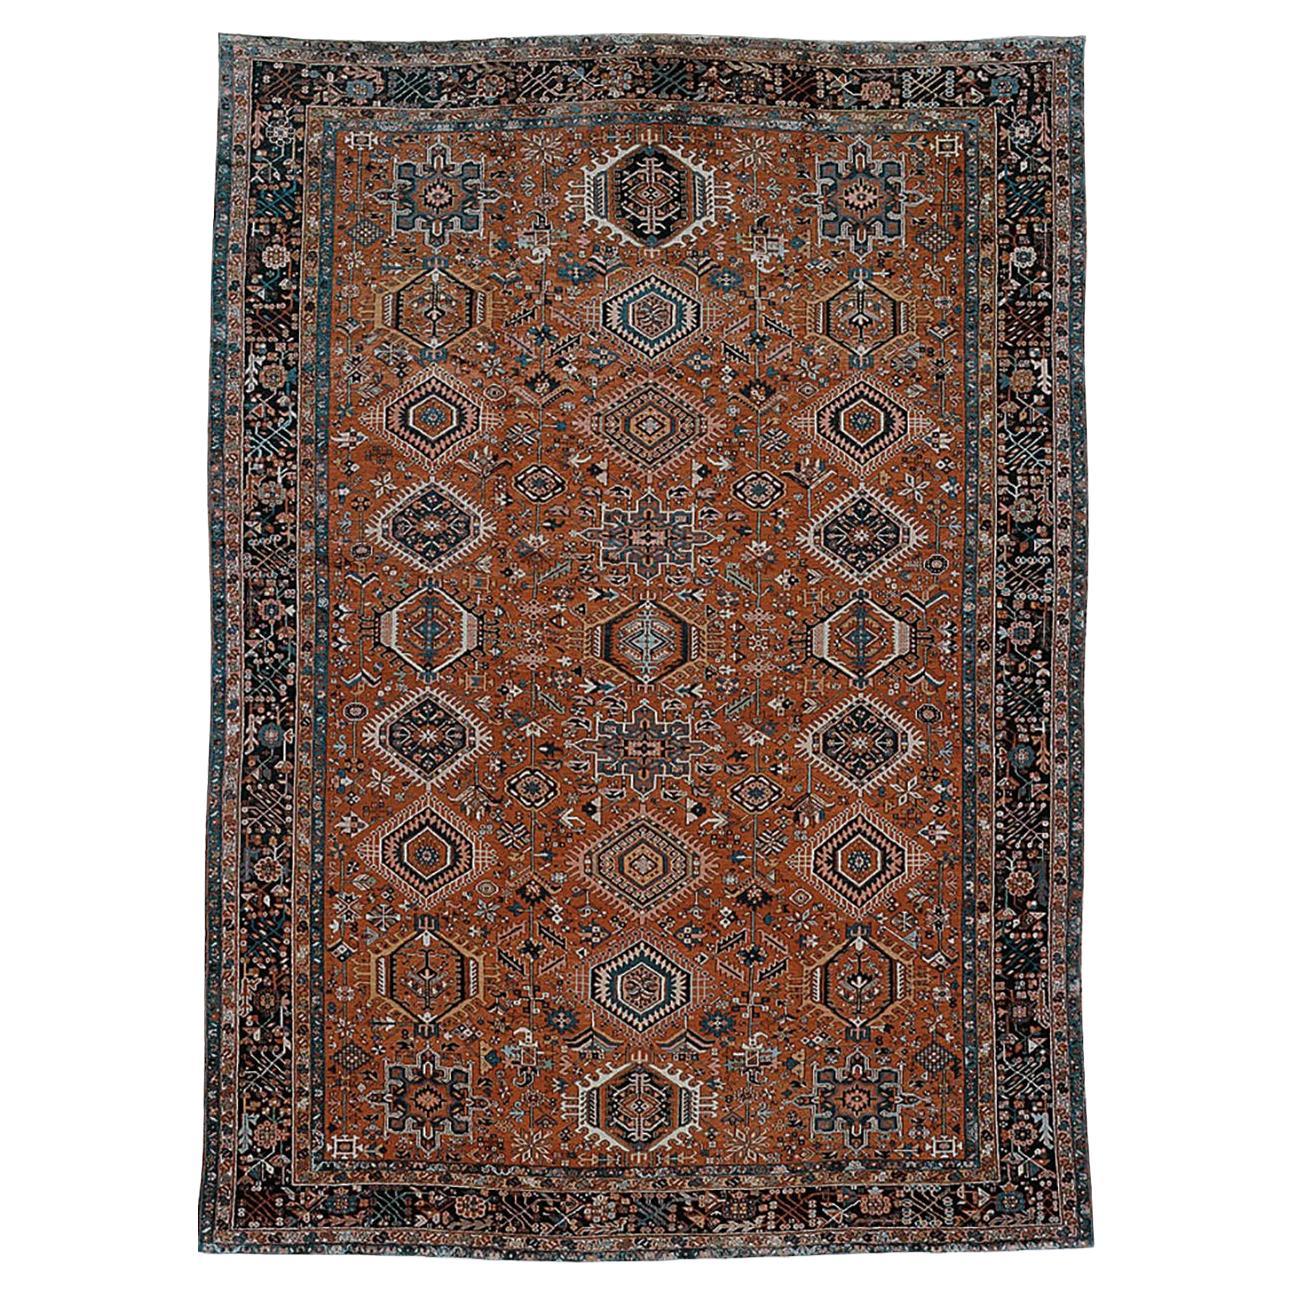 Antique Persian Karadja Carpet